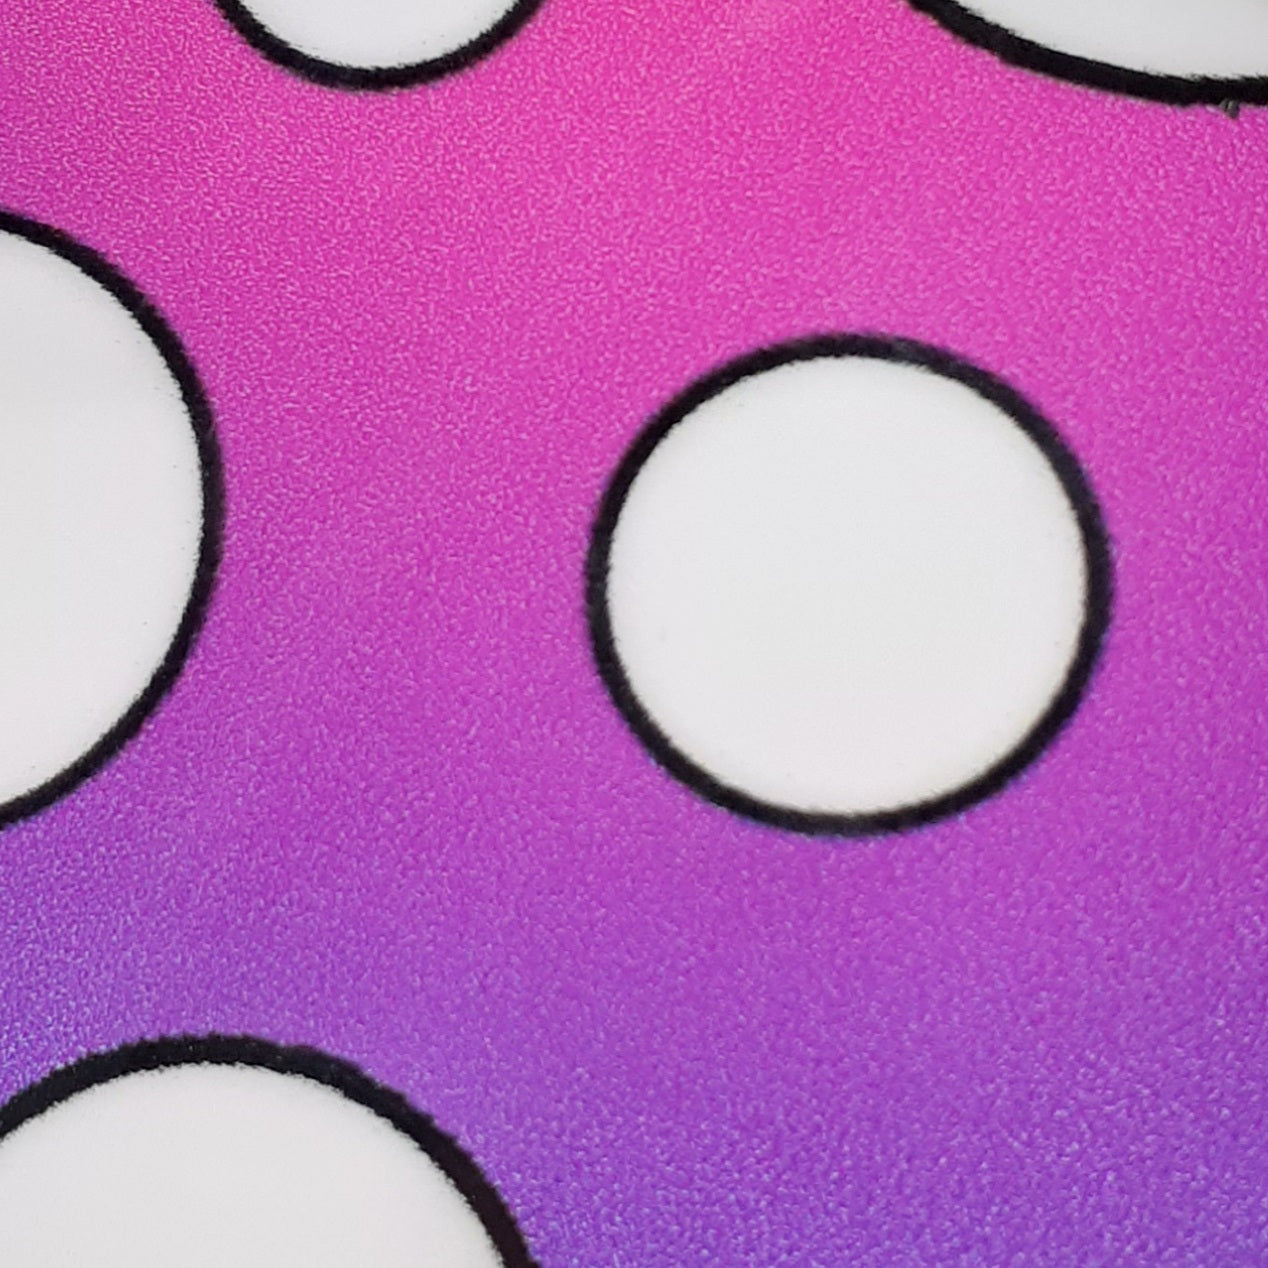 3” Mushroom Sticker, Purple pink , white spots, Waterproof